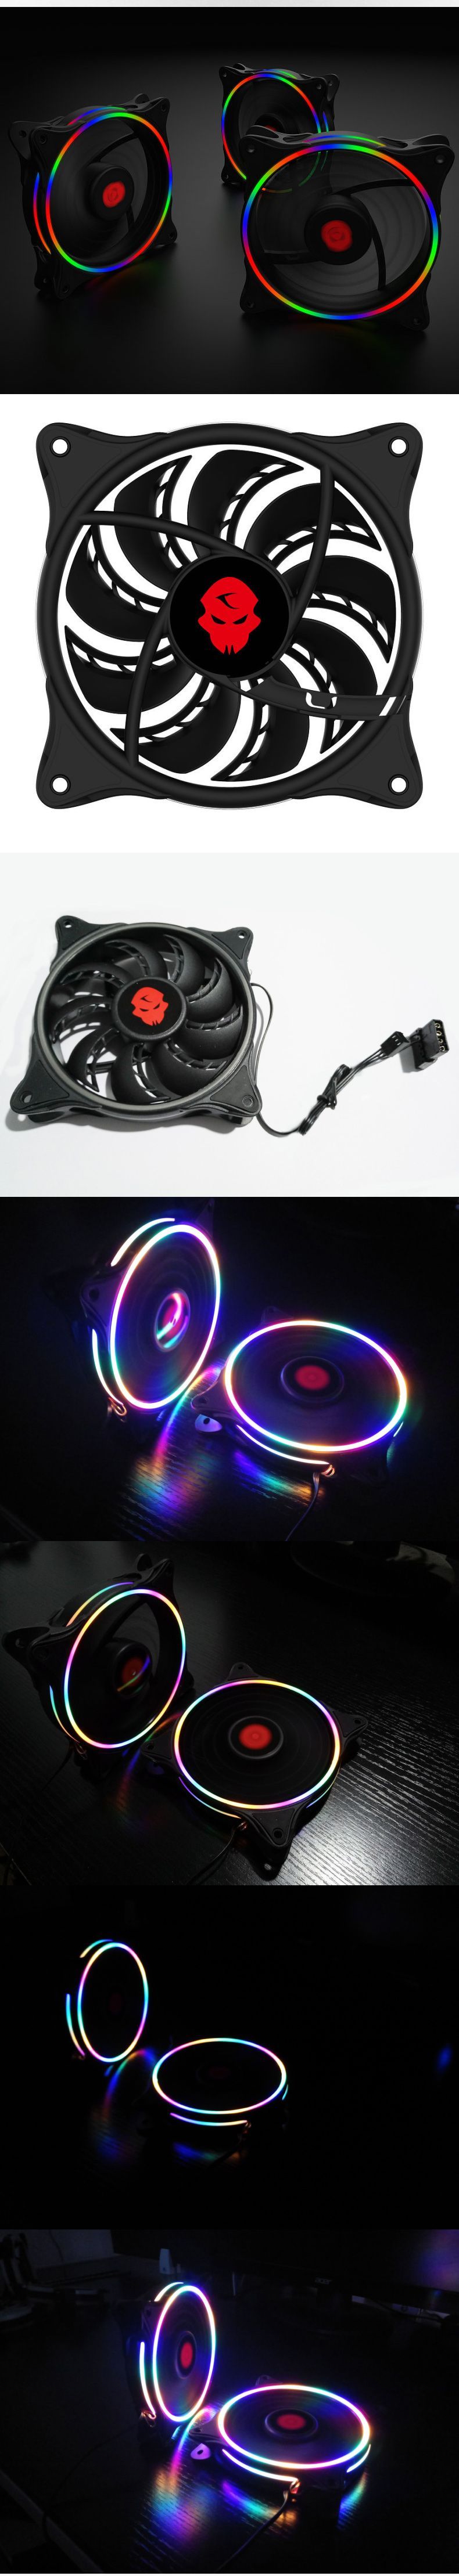 COOLMOON-Neon-Desktop-Computer-Case-Fan-12cm-RGB-Rainbow-Color-LED-Light-Laptop-PC-Case-Cooling-Fan--1657278